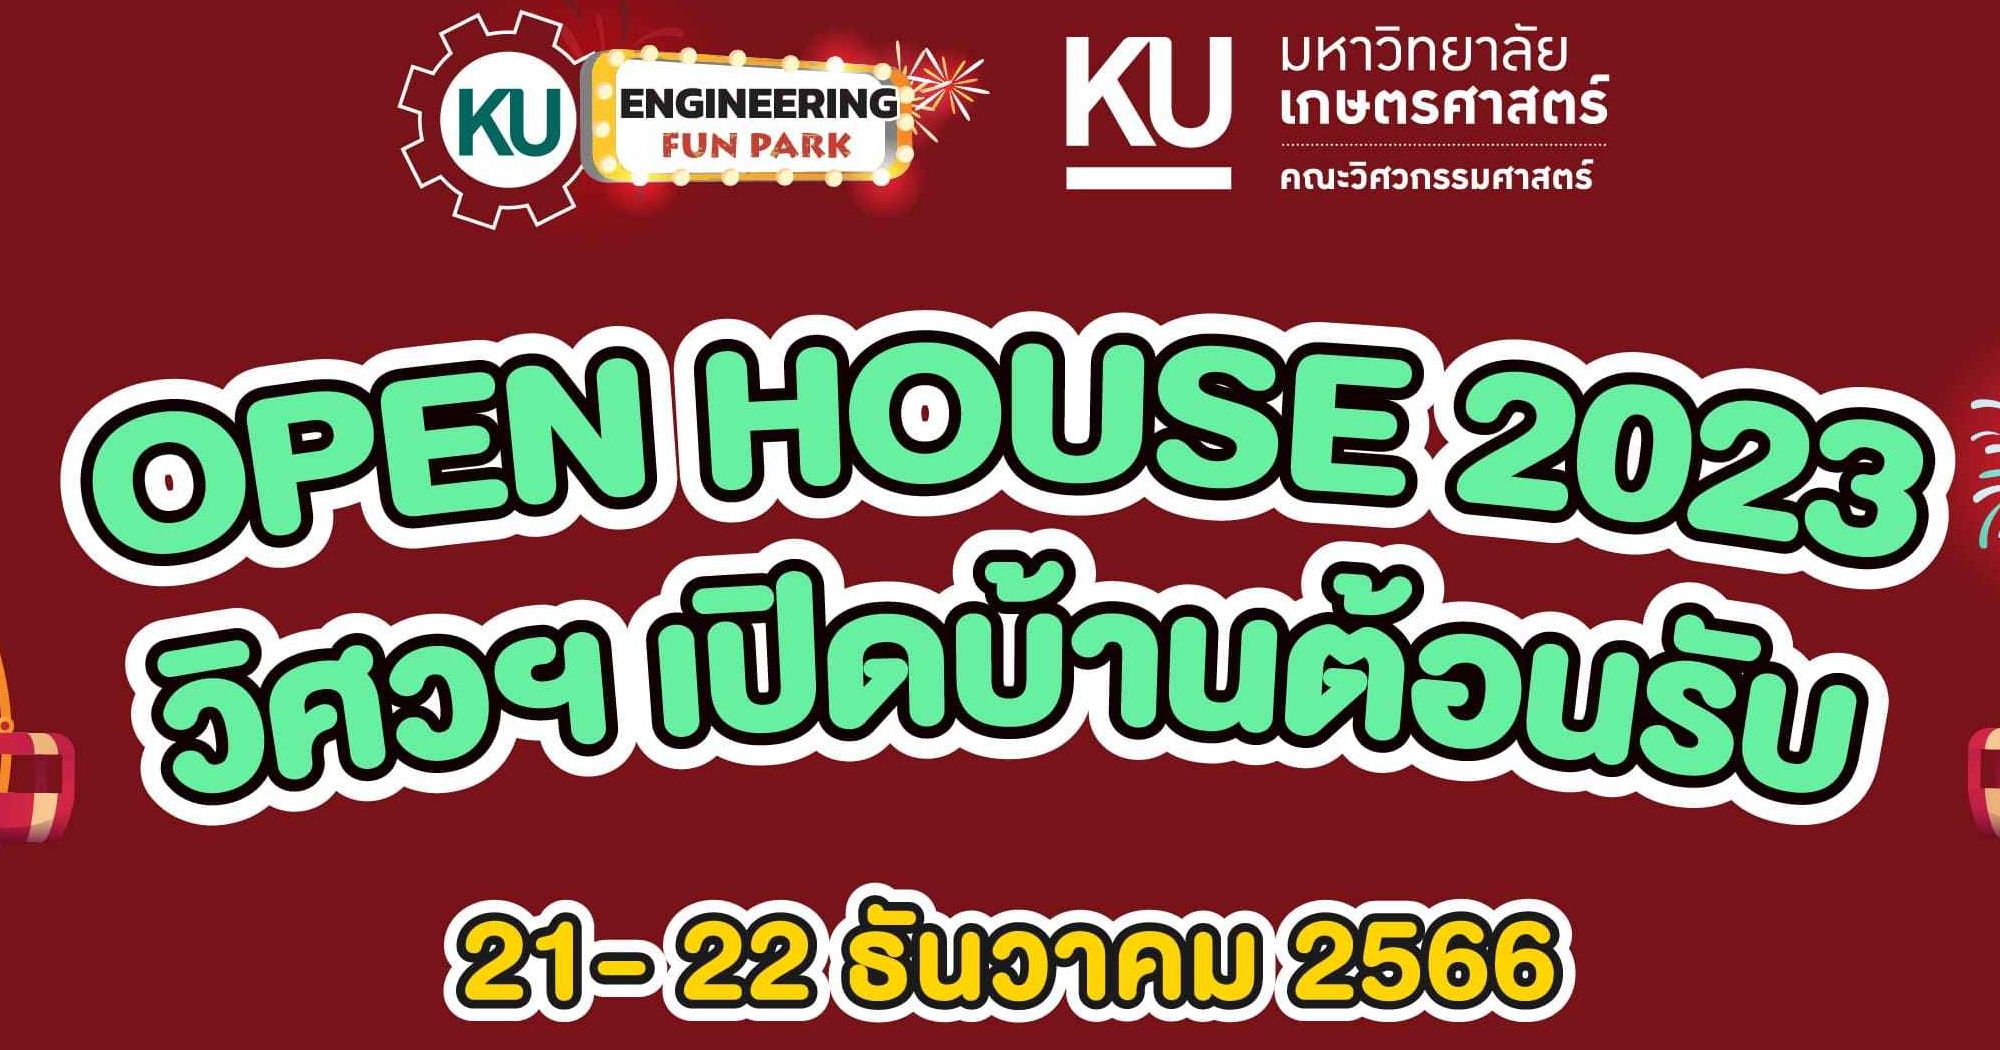 การจัดงานเลือกแนวทางวางอนาคต Open House  คณะวิศวกรรมศาสตร์ มหาวิทยาลัยเกษตรศาสตร์ 21-22 ธันวาคม 2566